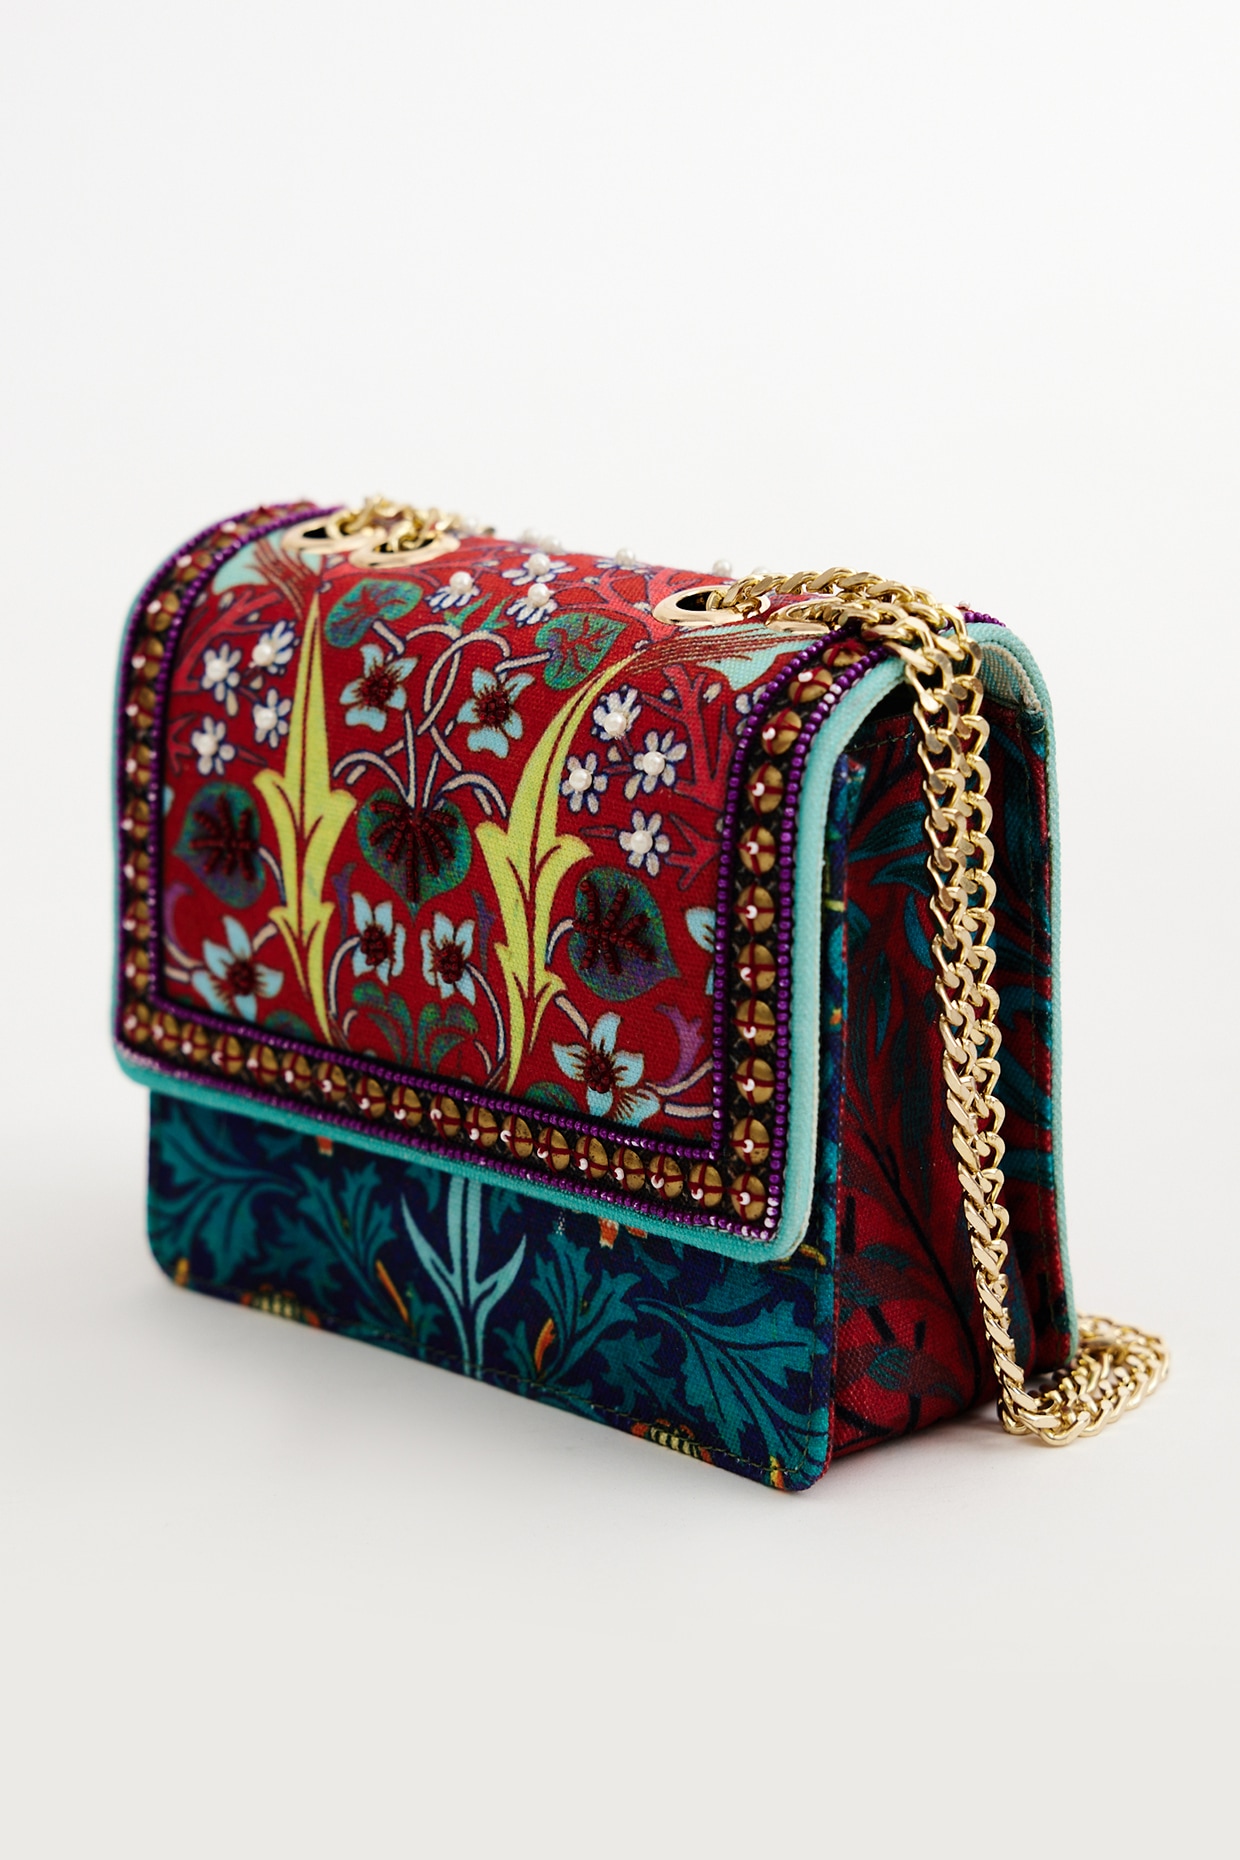 Favorite Bag Pattern Designers - MHS Blog